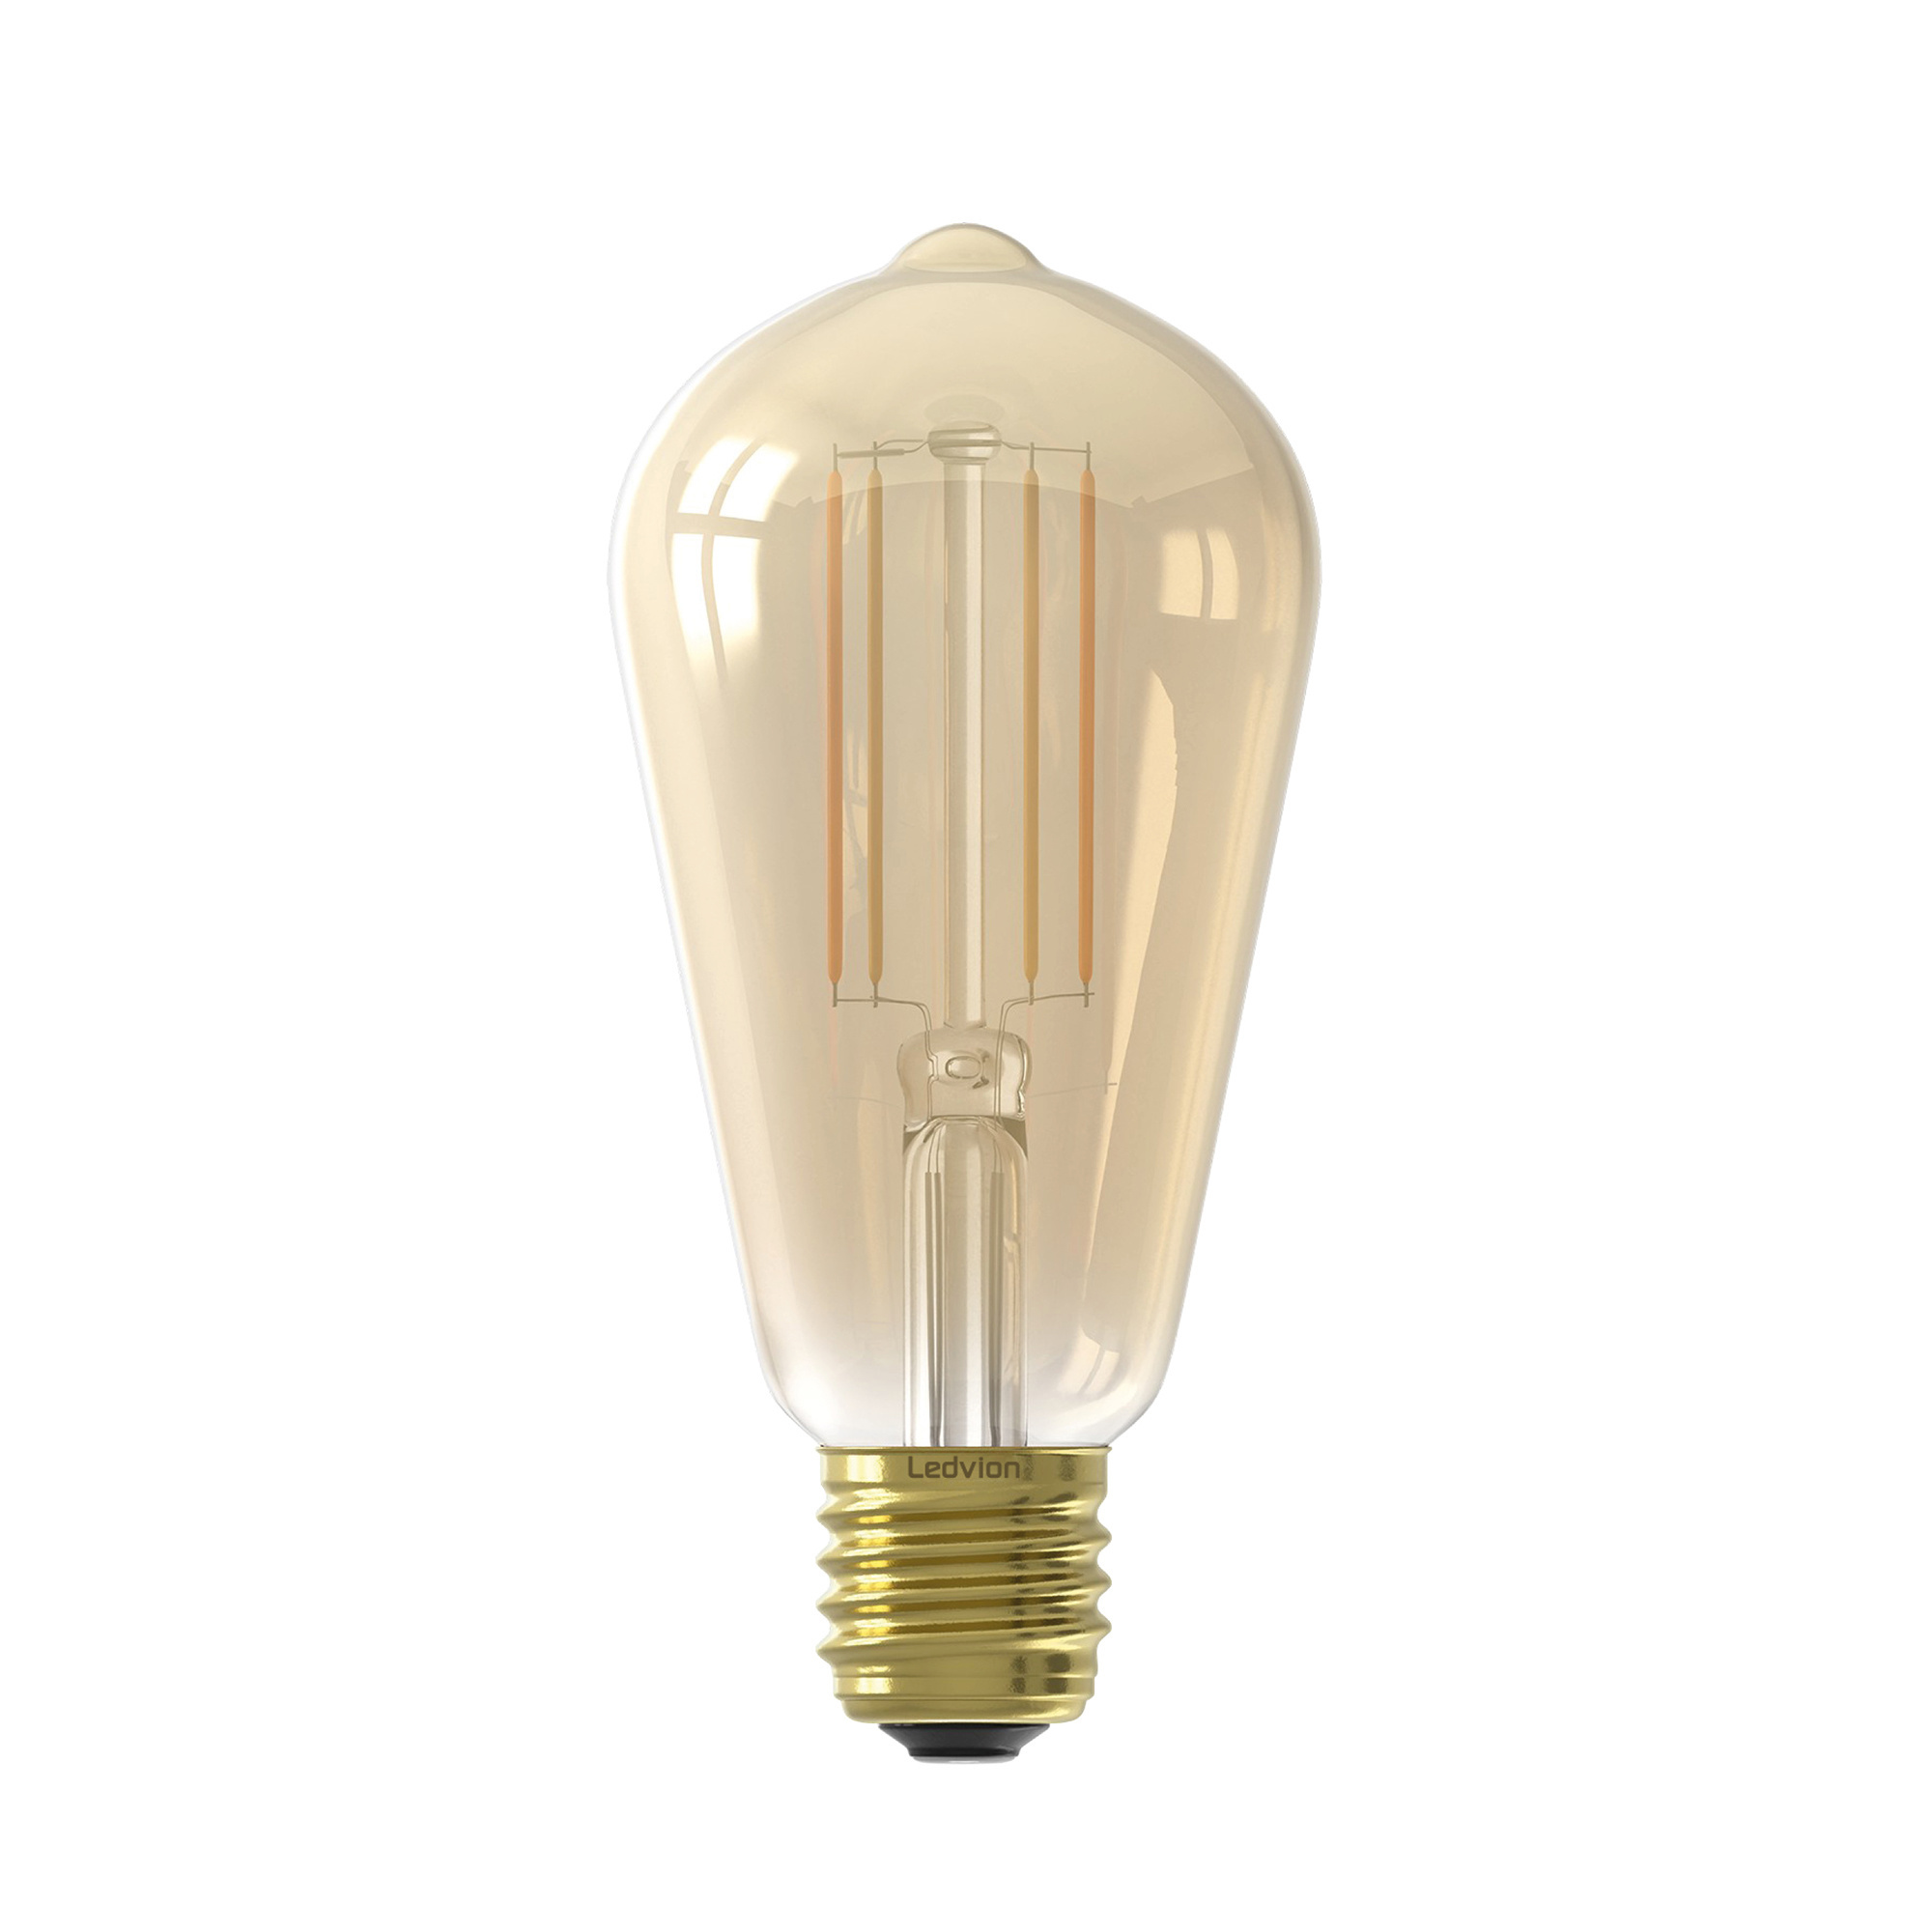 blootstelling vochtigheid optillen Ledvion Dimbare E27 LED Lamp - 4.5W - 2100K - 470 Lumen - Lightexpert.nl